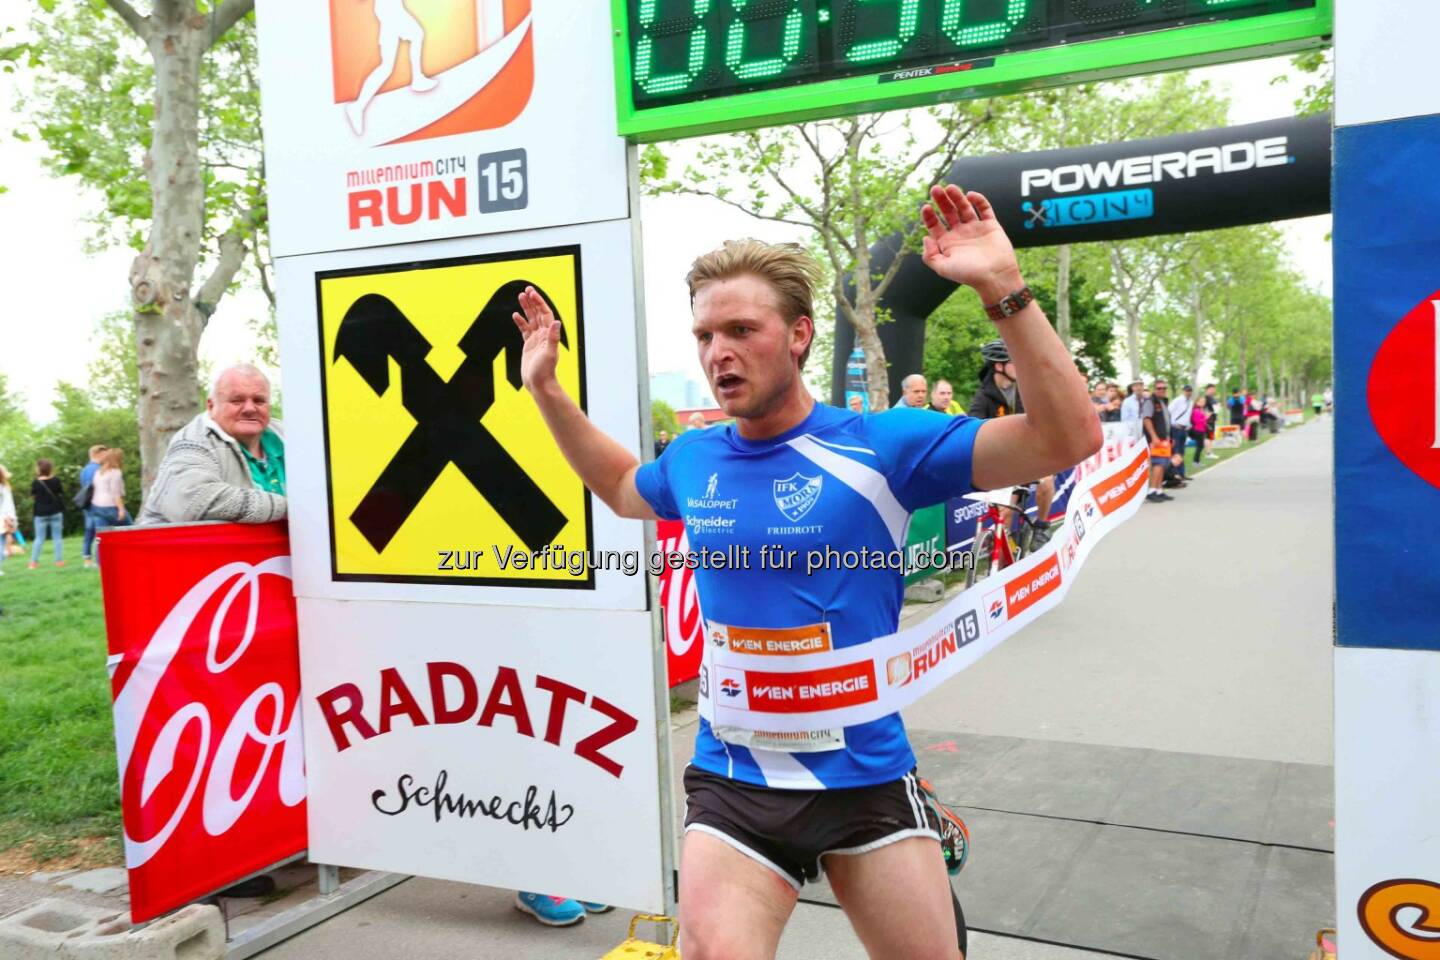 Max Bergström, Sieger Herren Millennium City Run 2015 über die 10km Distanz